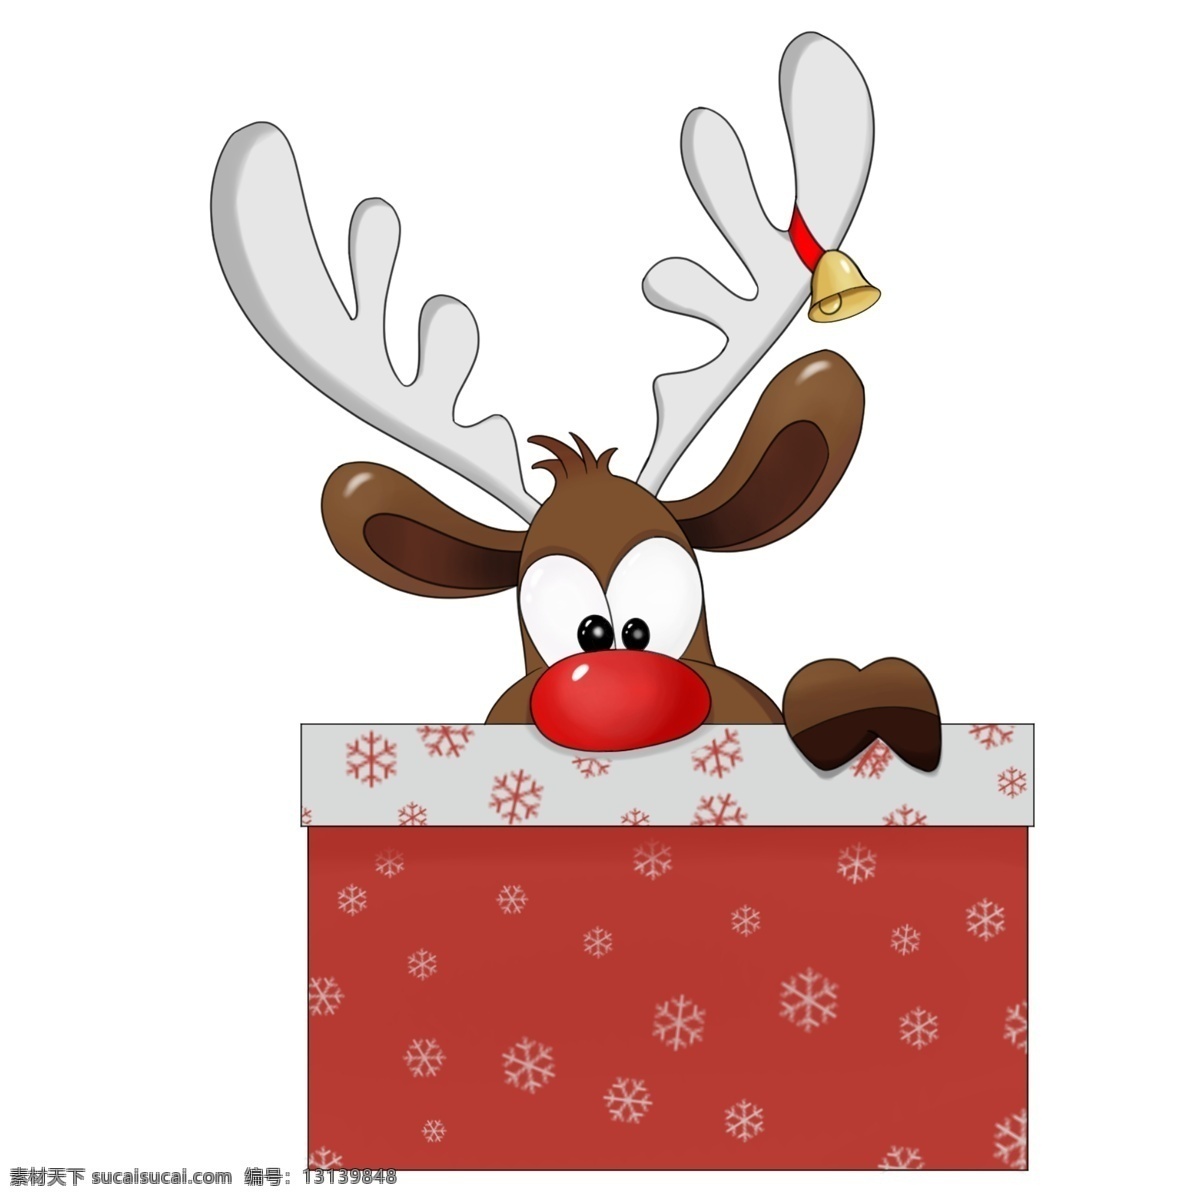 圣诞节 可爱 麋鹿 手绘 插画 圣诞 鹿 可爱麋鹿 圣诞节快乐 送礼物 圣诞礼物 手绘插画